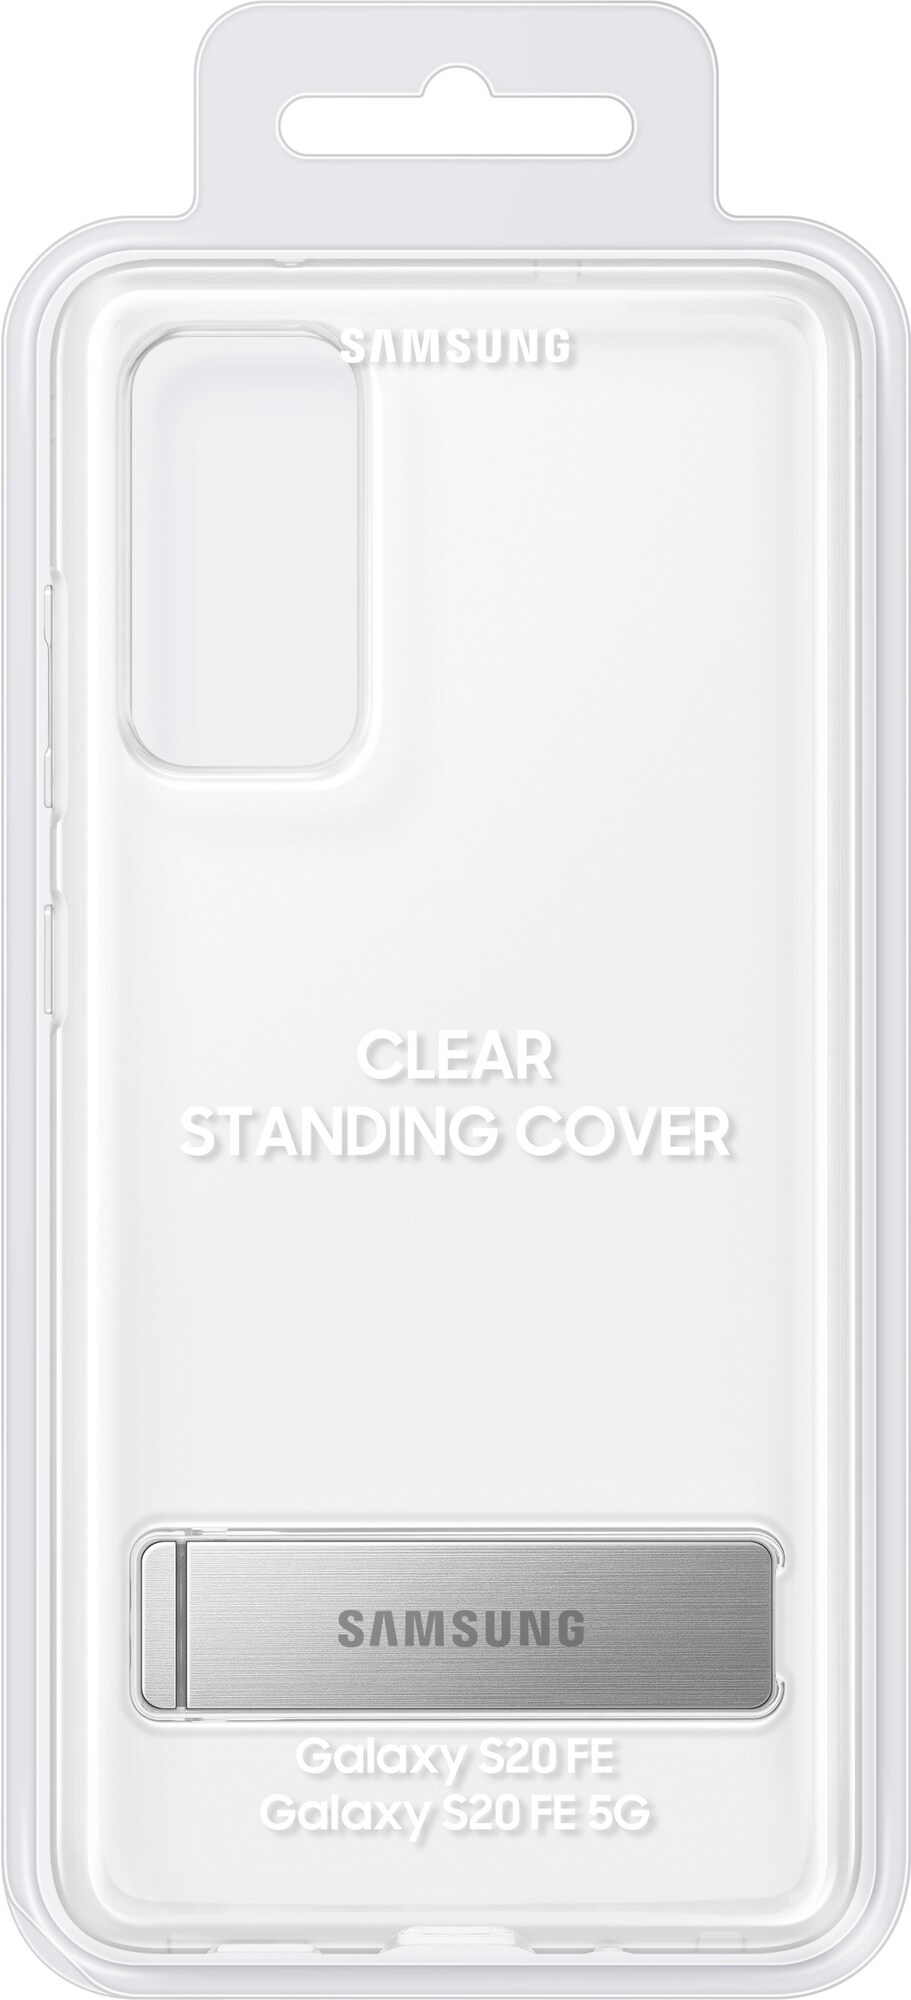 Samsung Galaxy S20 FE/S20 FE 5G stående deksel (gjennomsiktig) - Deksler og  etui til mobiltelefon - Elkjøp